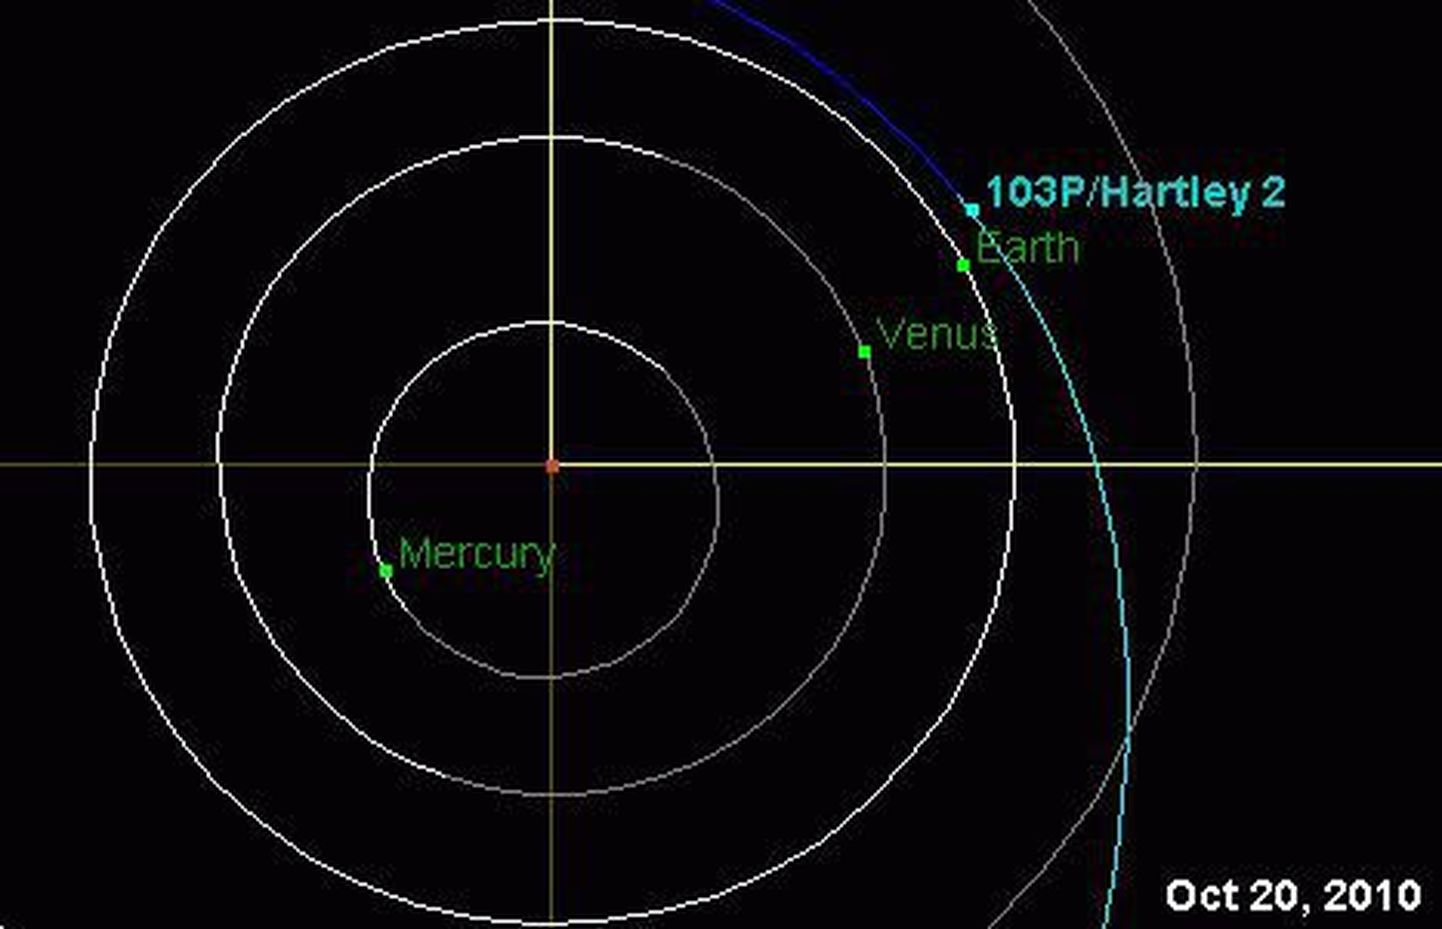 Oktoobris möödub Maast komeet Hartley 2